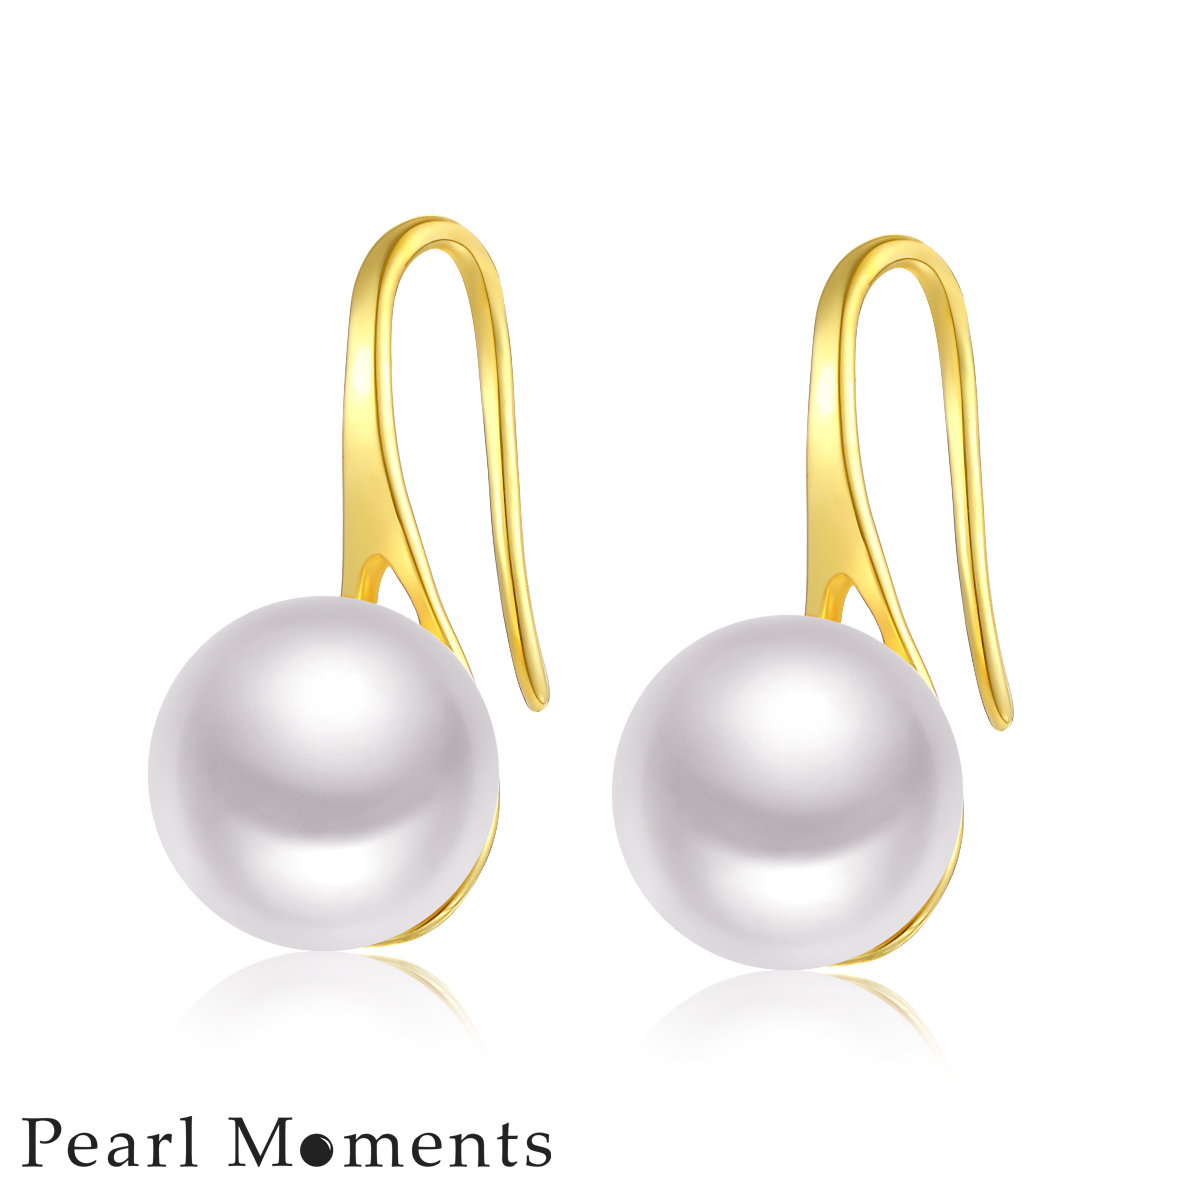 Pearl moments KITTEN HEELS